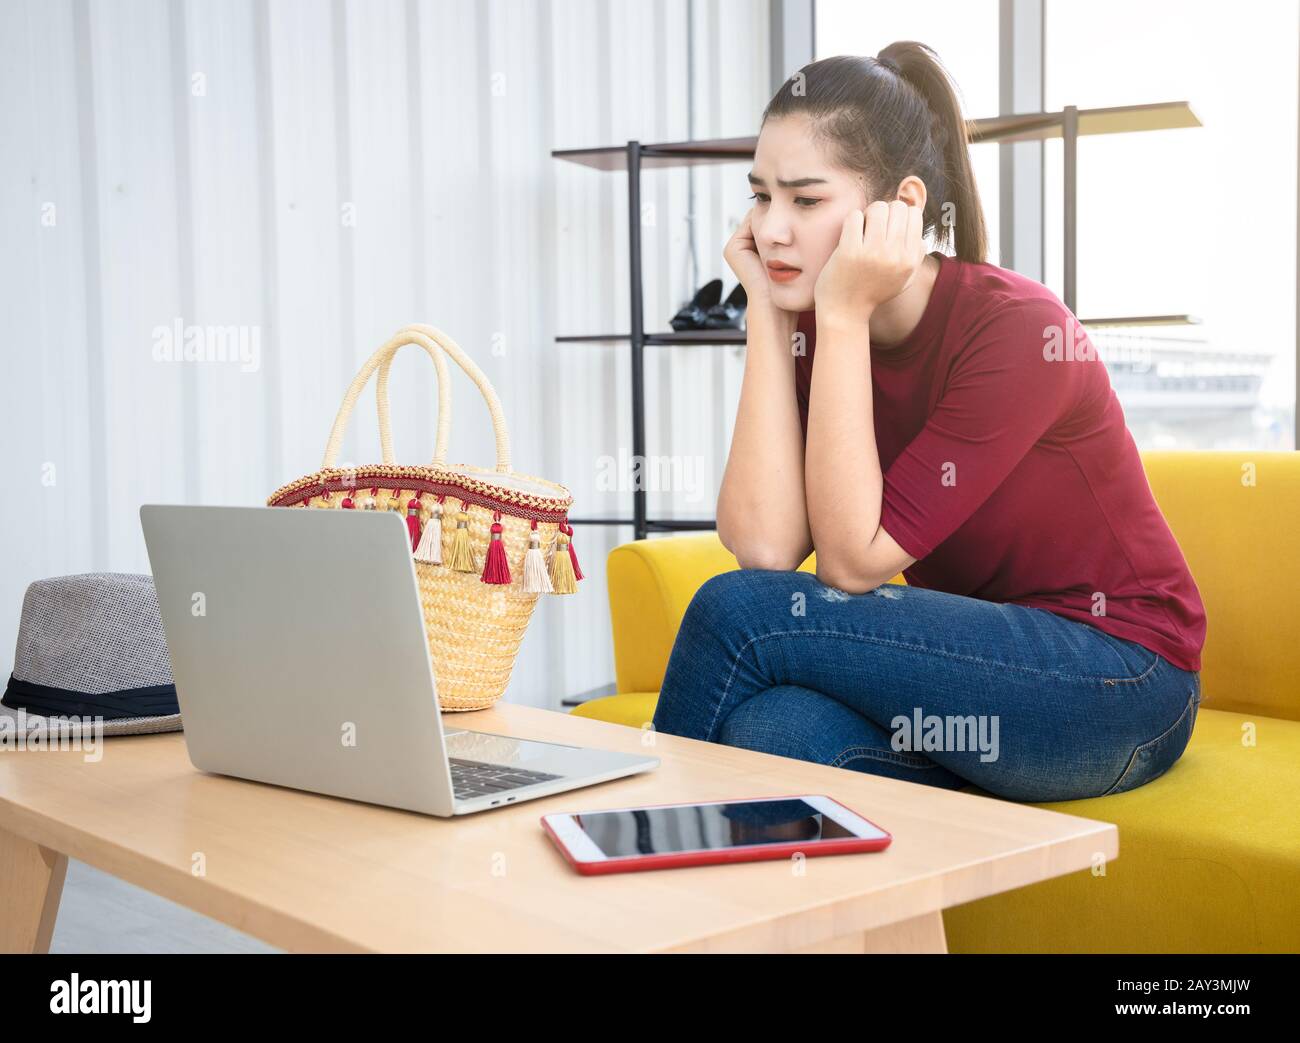 Una mujer asiática ansiosa se sienta en un sofá amarillo y mire la pantalla de su ordenador portátil. La persona influyente en Internet se preocupa por su problema en las redes sociales. Foto de stock